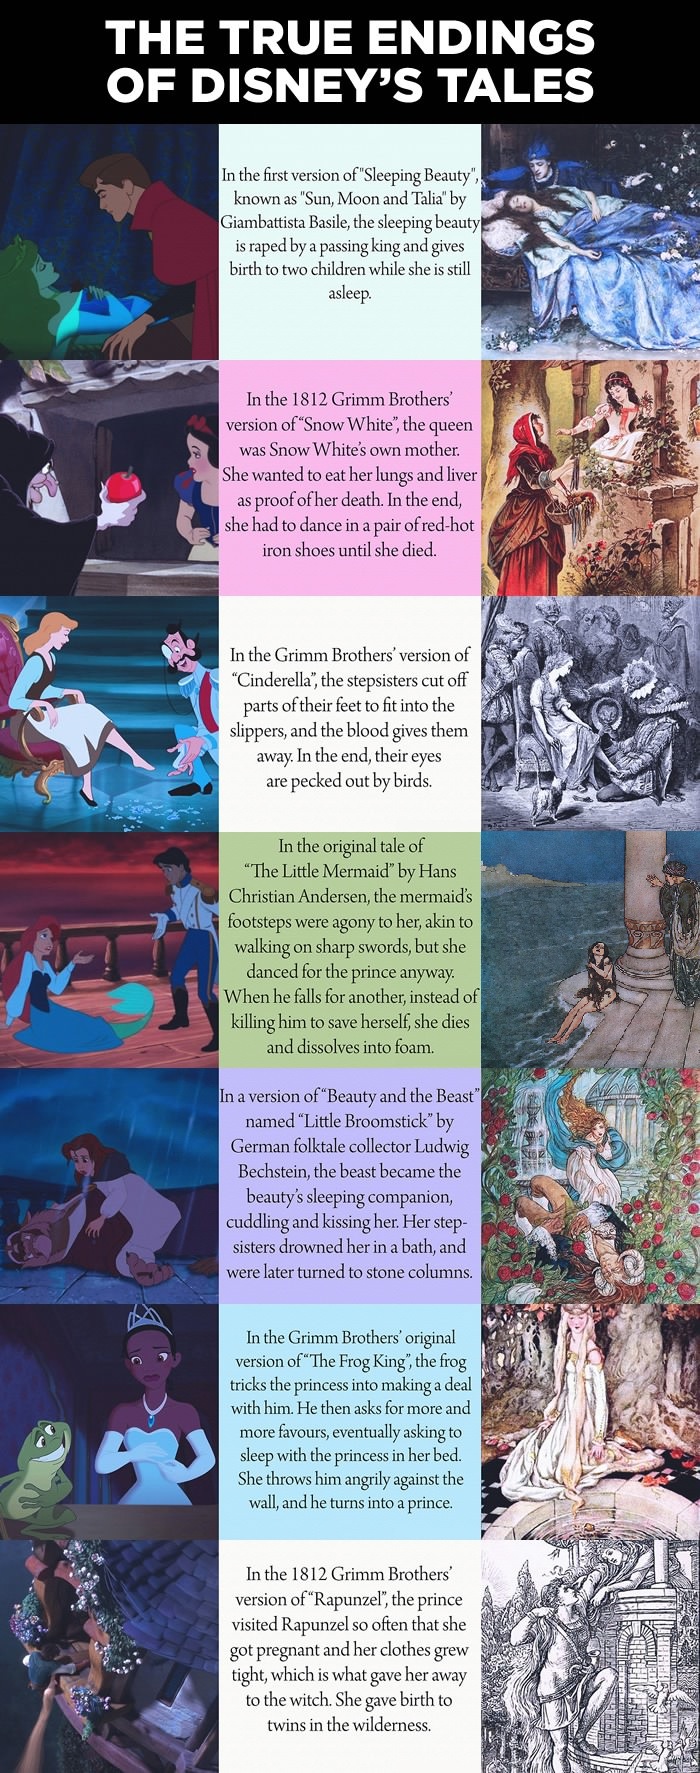 The True Ending of Disney Tales